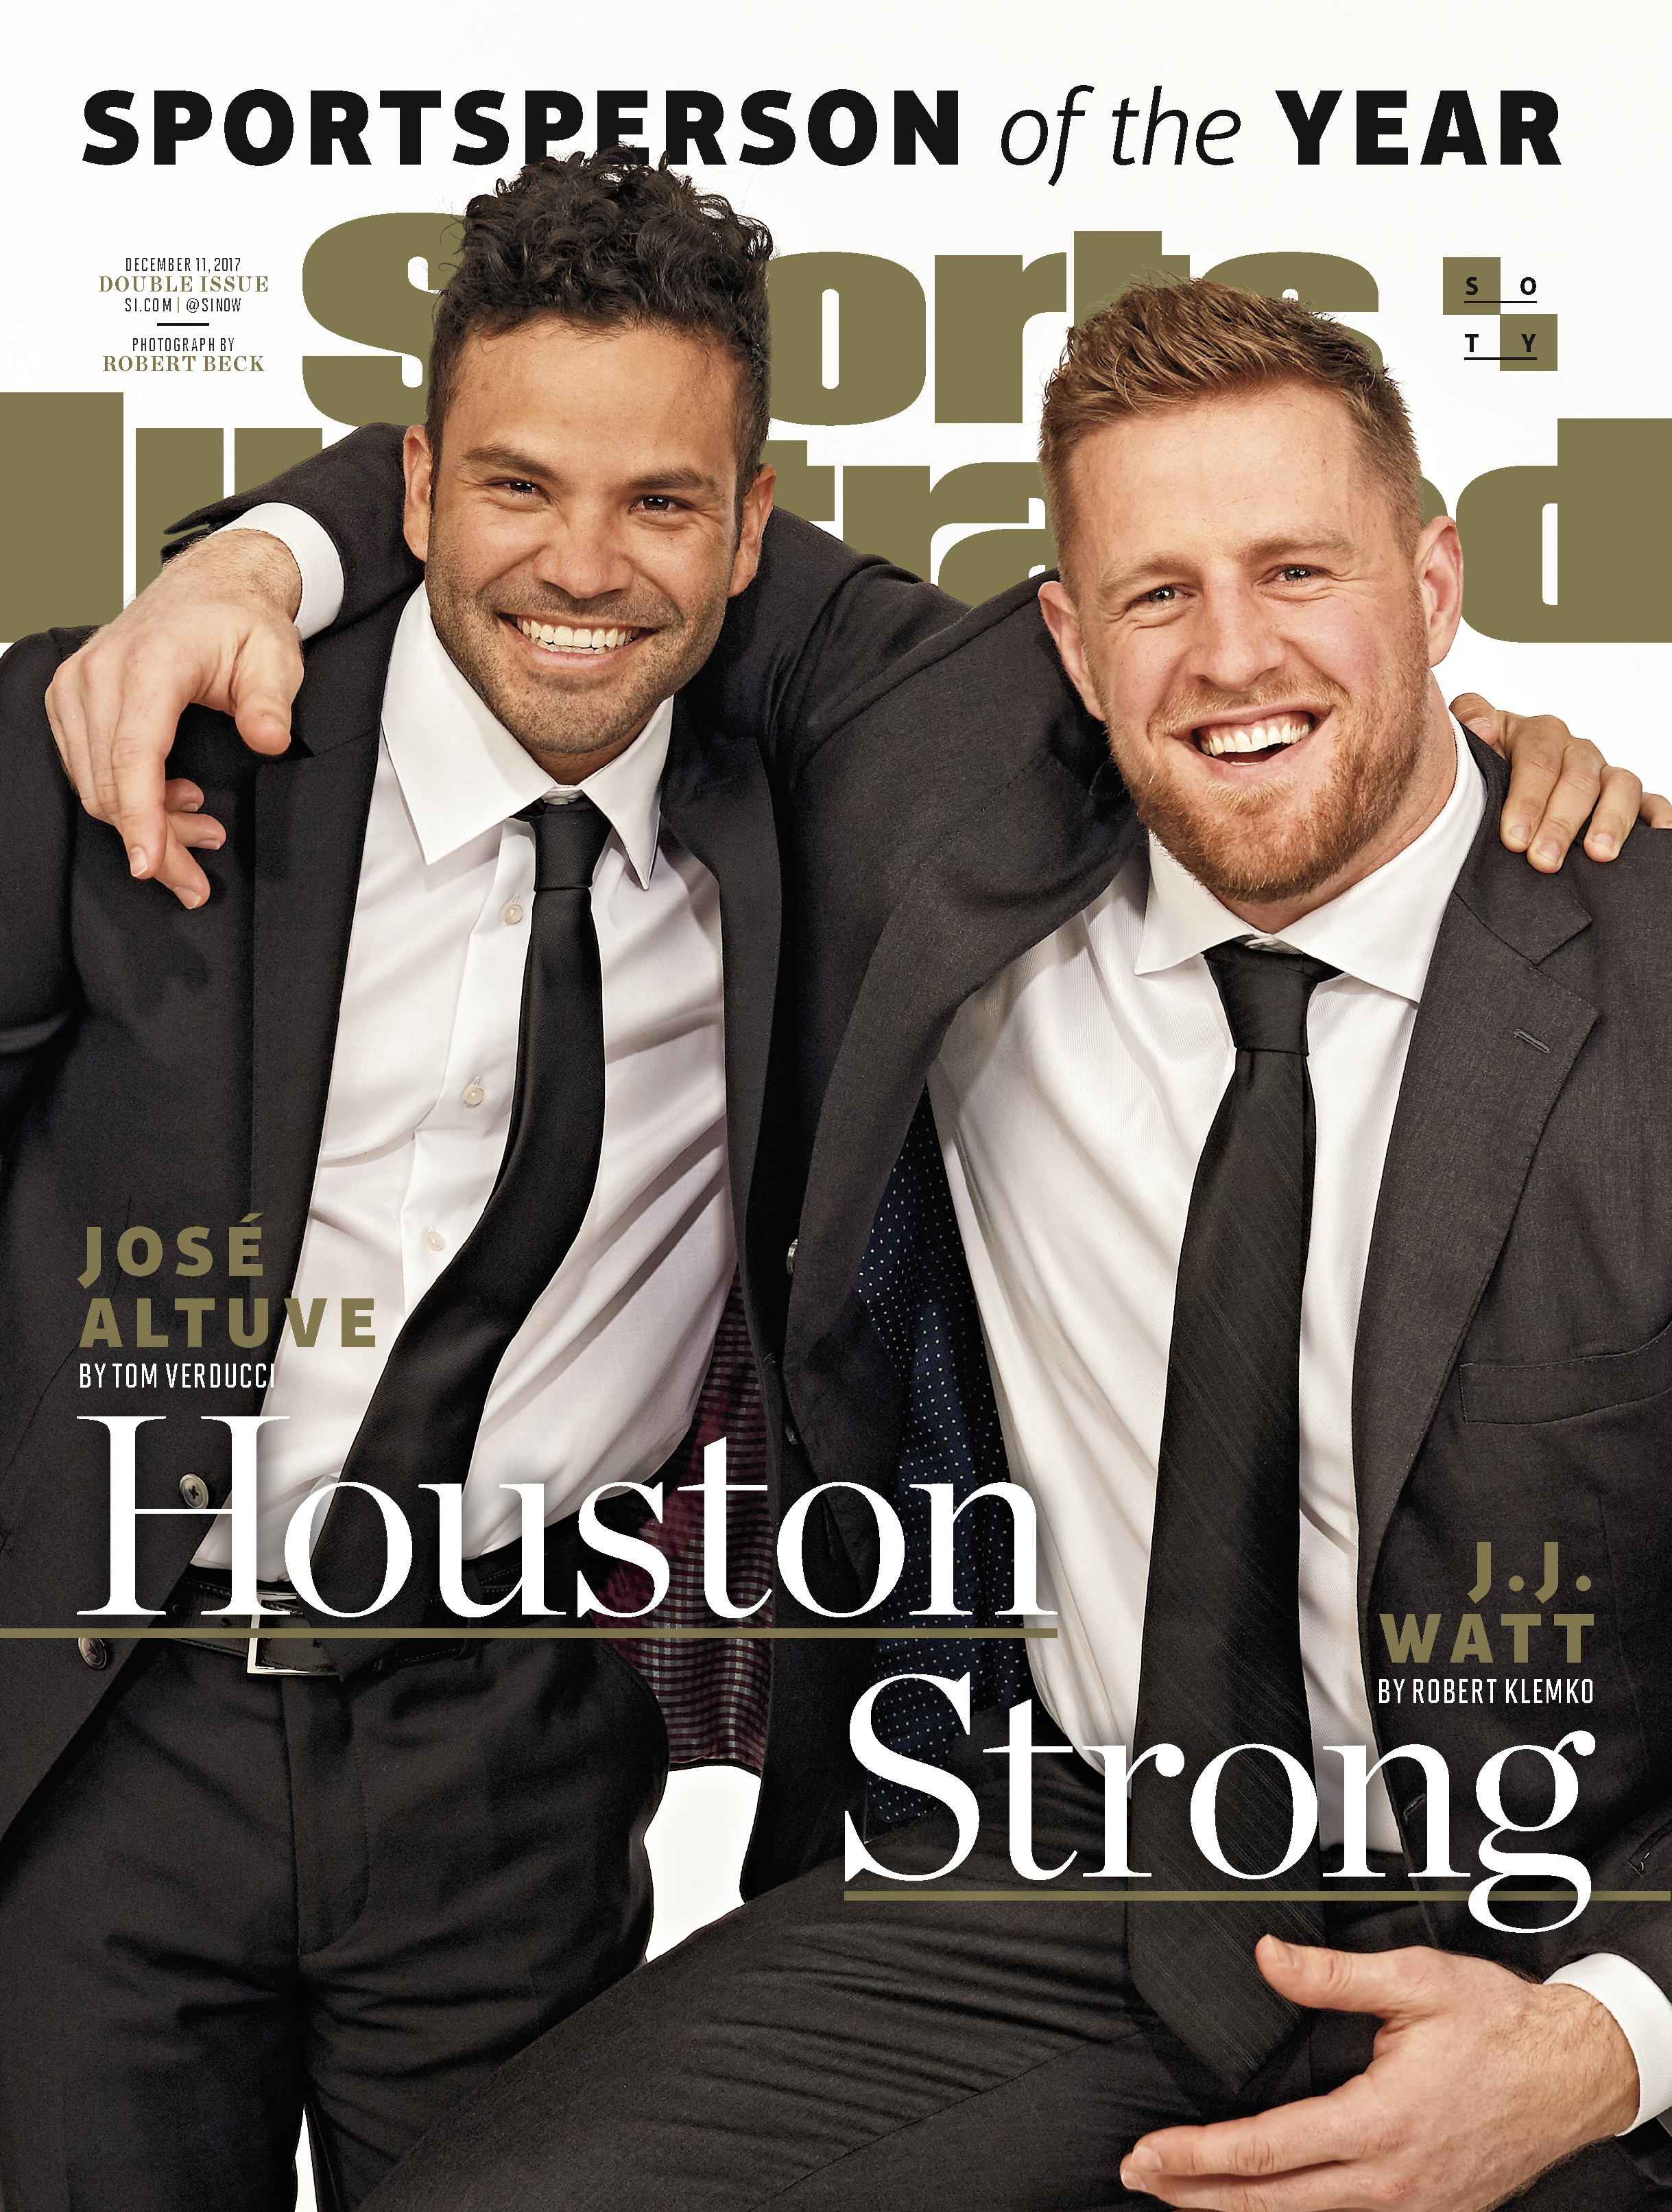 J.J. Watt and José Altuve Receive Sports Illustrated's 2017